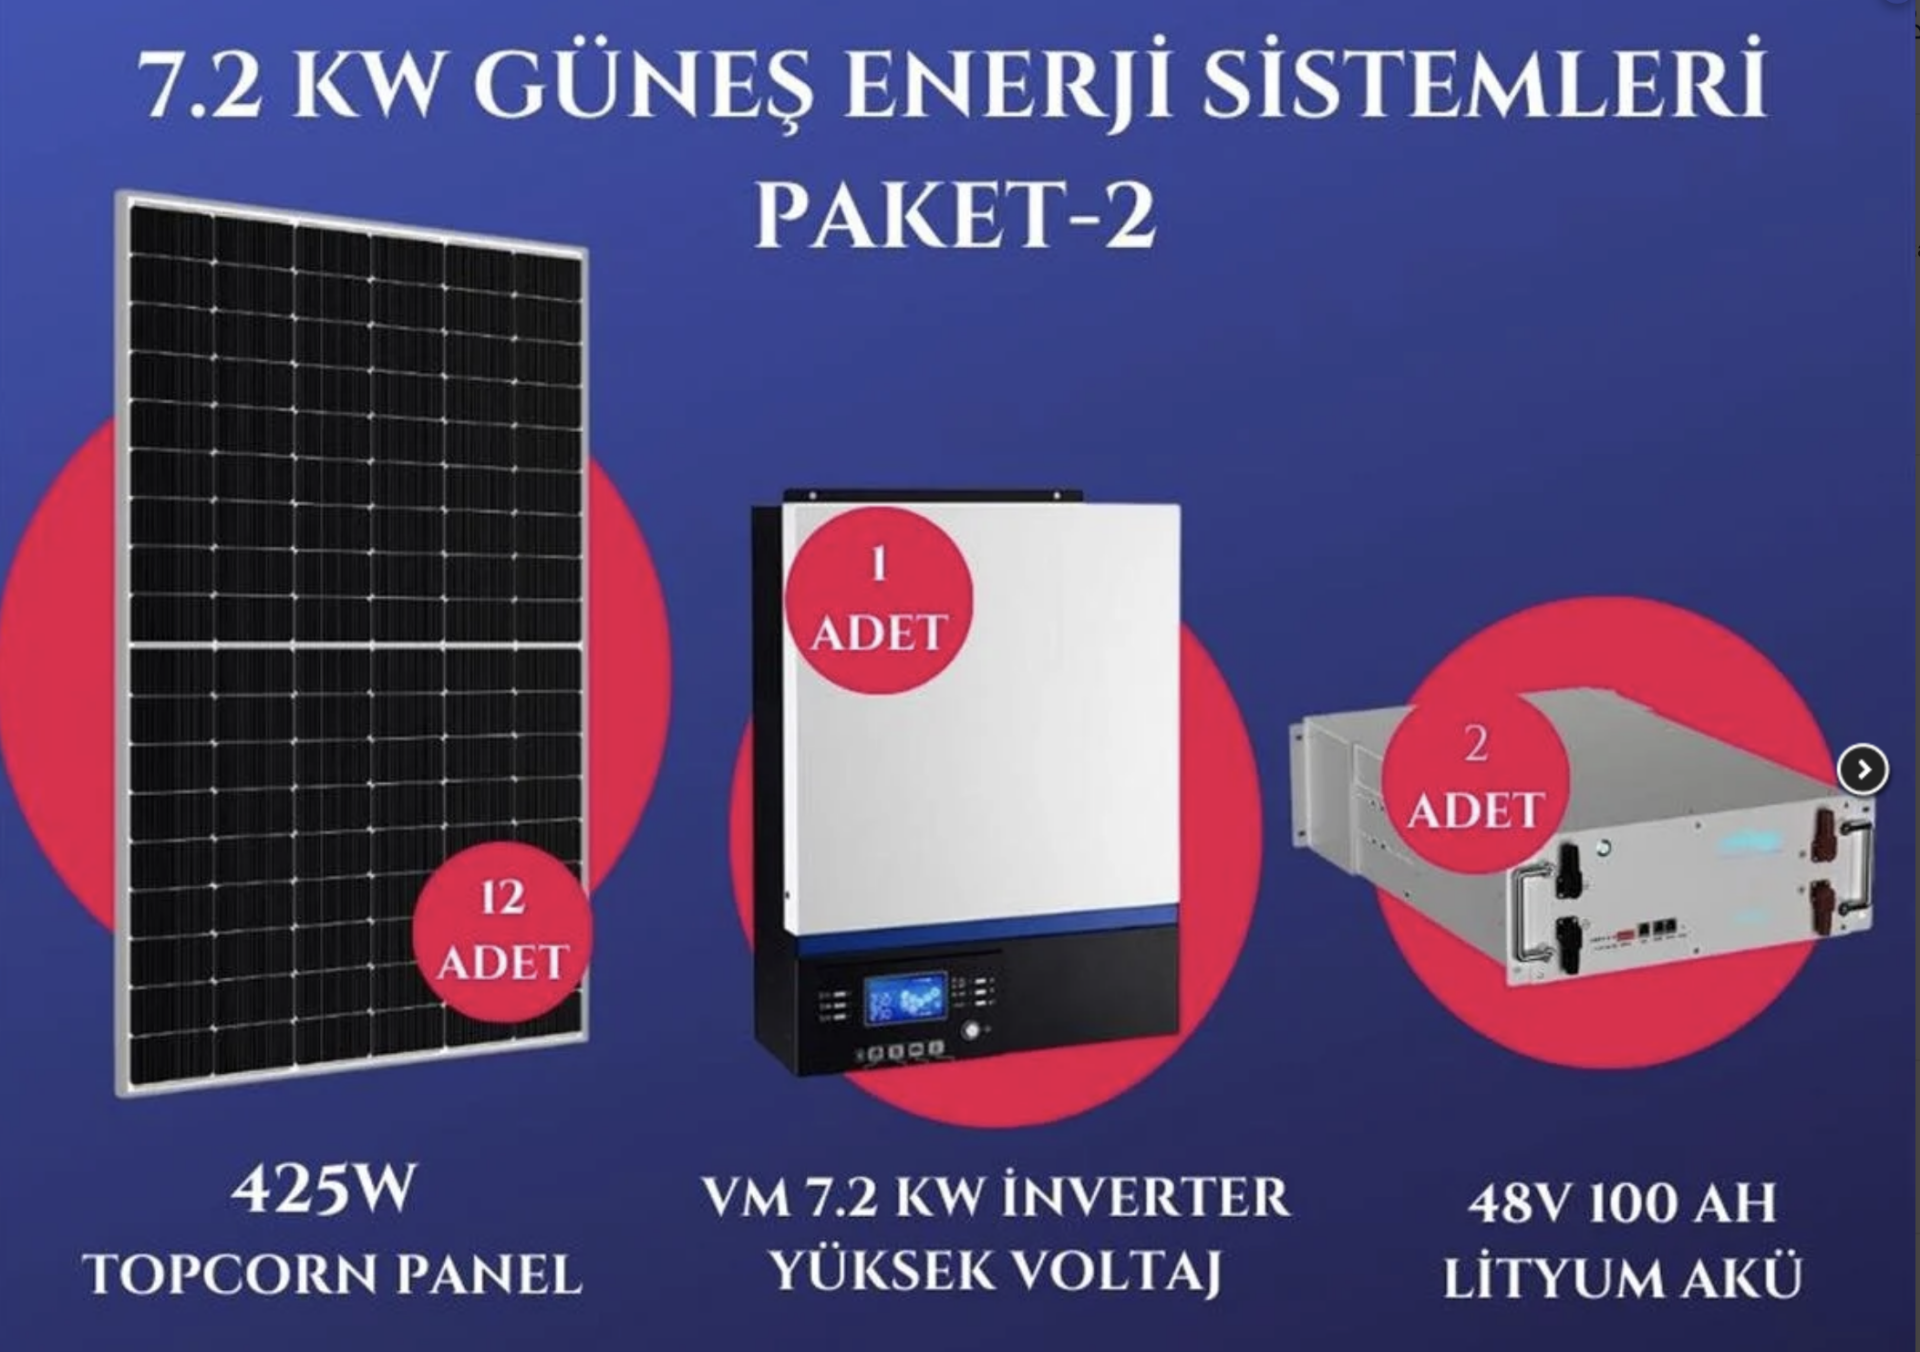 7.2Kw Güneş Enerji Sistemleri Paketi-2